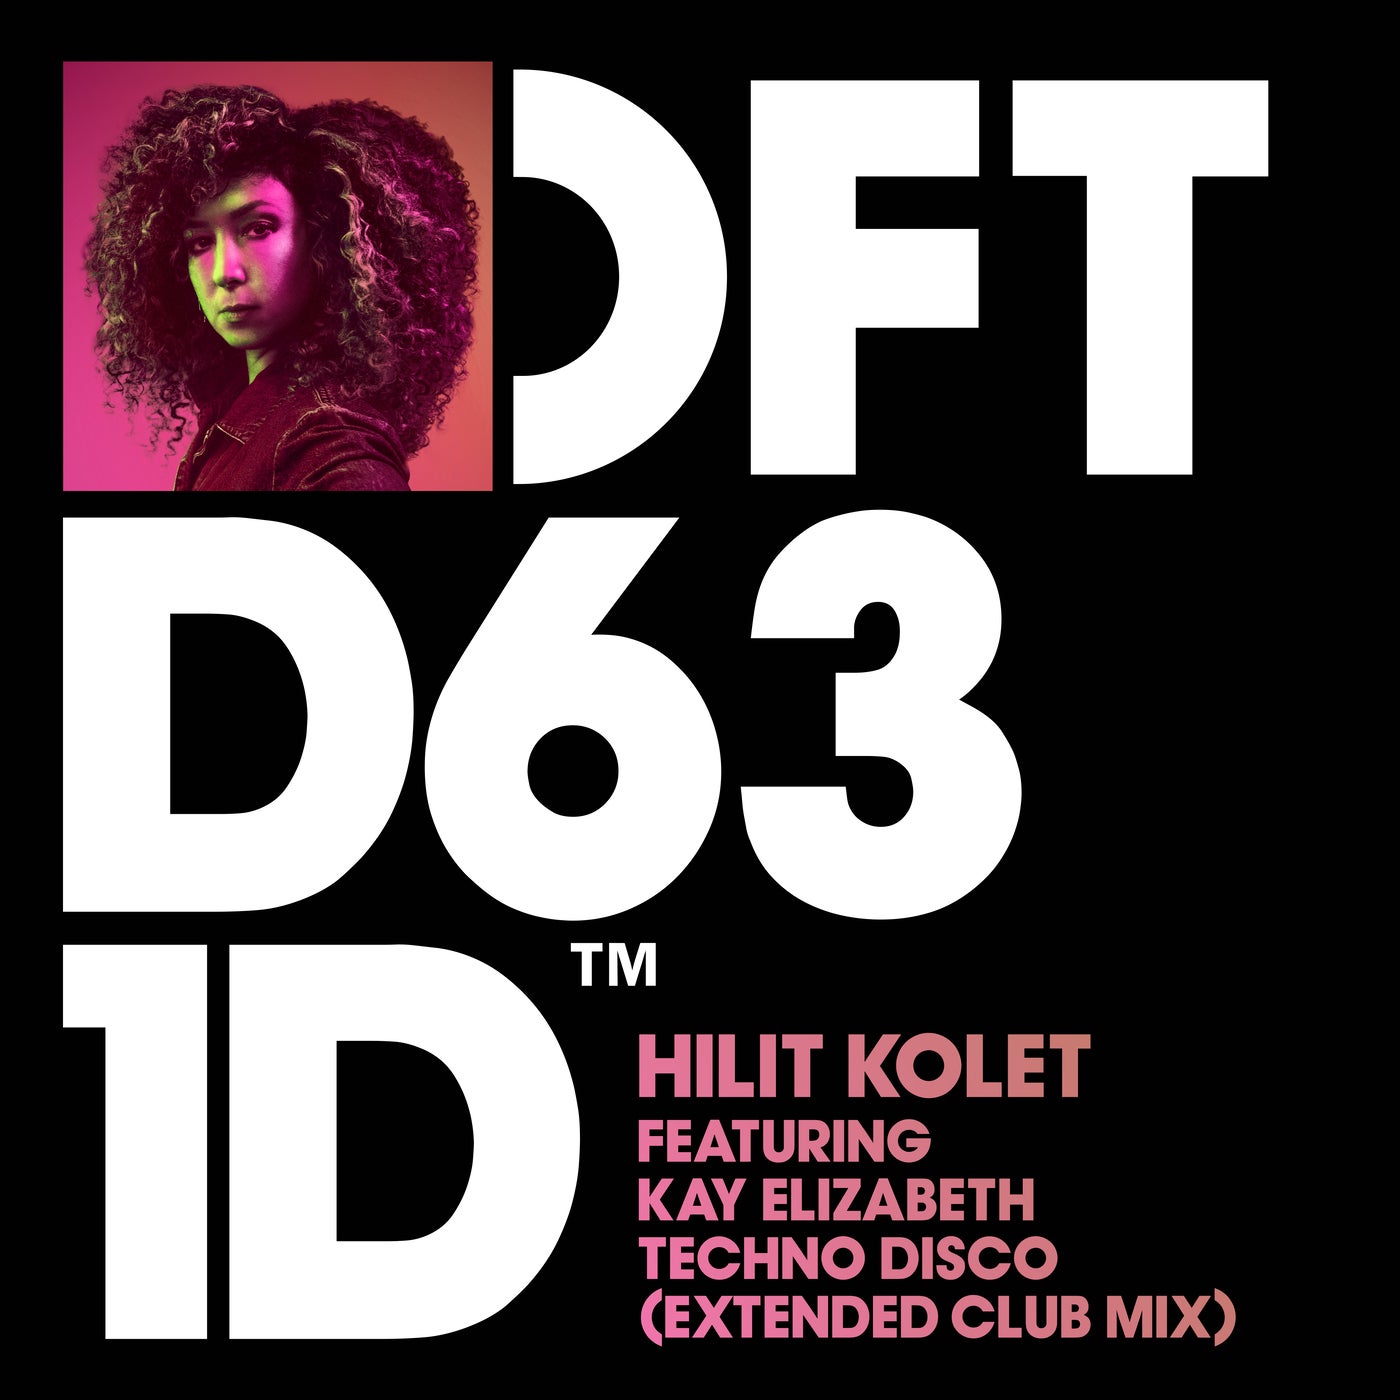 Hilit Kolet feat. Kay Elizabeth - Techno Disco (Extended Club Mix)